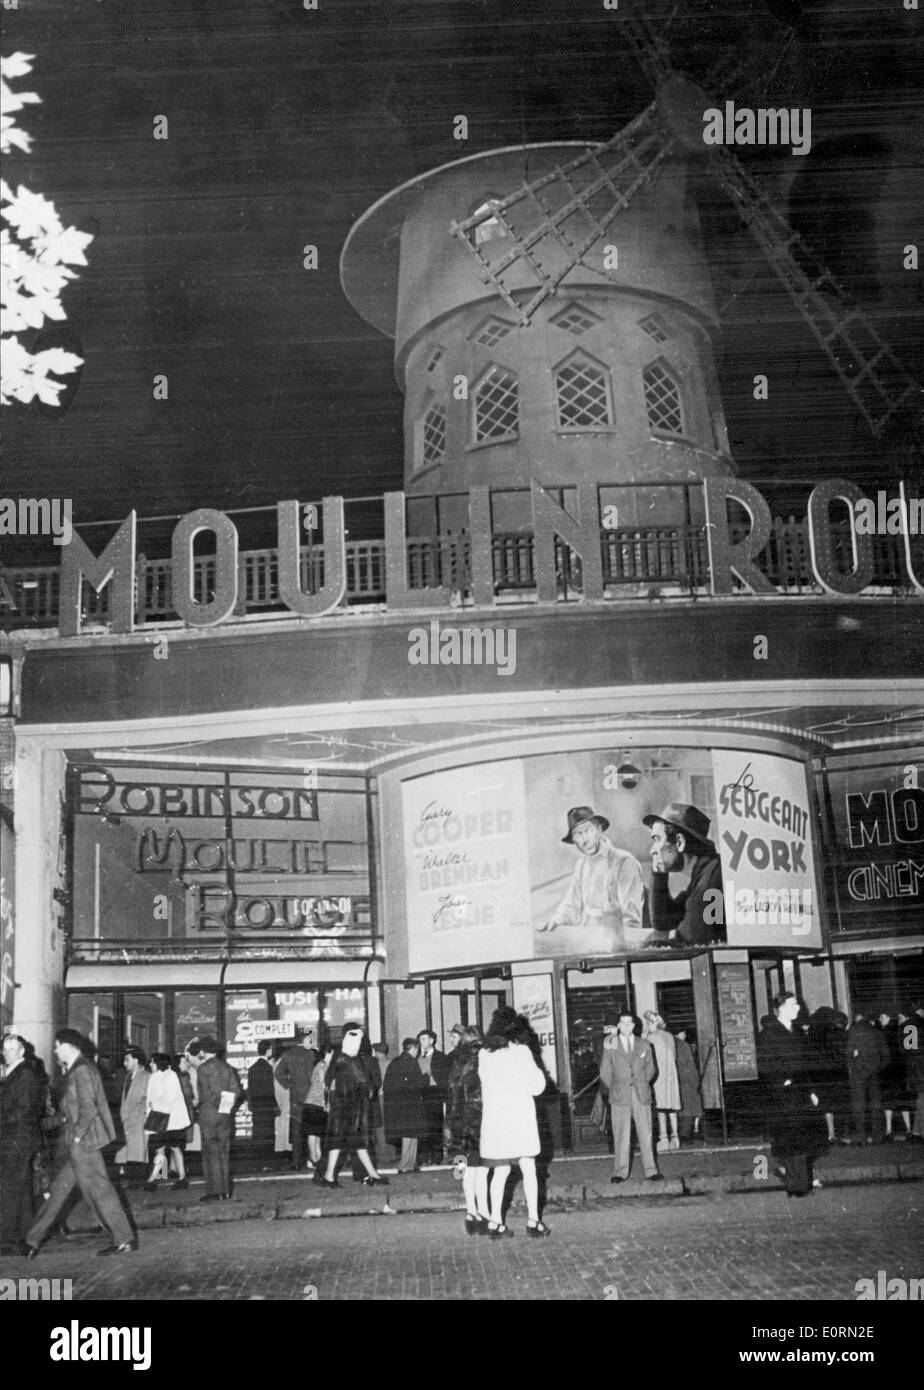 Il 1 gennaio, 1960 - Parigi, Francia - mondo-famoso Moulin Rouge Cabaret, immortalato da Toulouse-Lautrec è situato a Montmartre, il solo posto a Parigi dove si può vedere la vera può Can. Il Moulin Rouge è una destinazione turistica che offre spettacoli di danza e musica per i visitatori adulti provenienti da tutto il mondo. Nella foto: una caratteristica distintiva del Moulin Rouge Cabaret è il mulino a vento di rosso sul tetto. Foto Stock